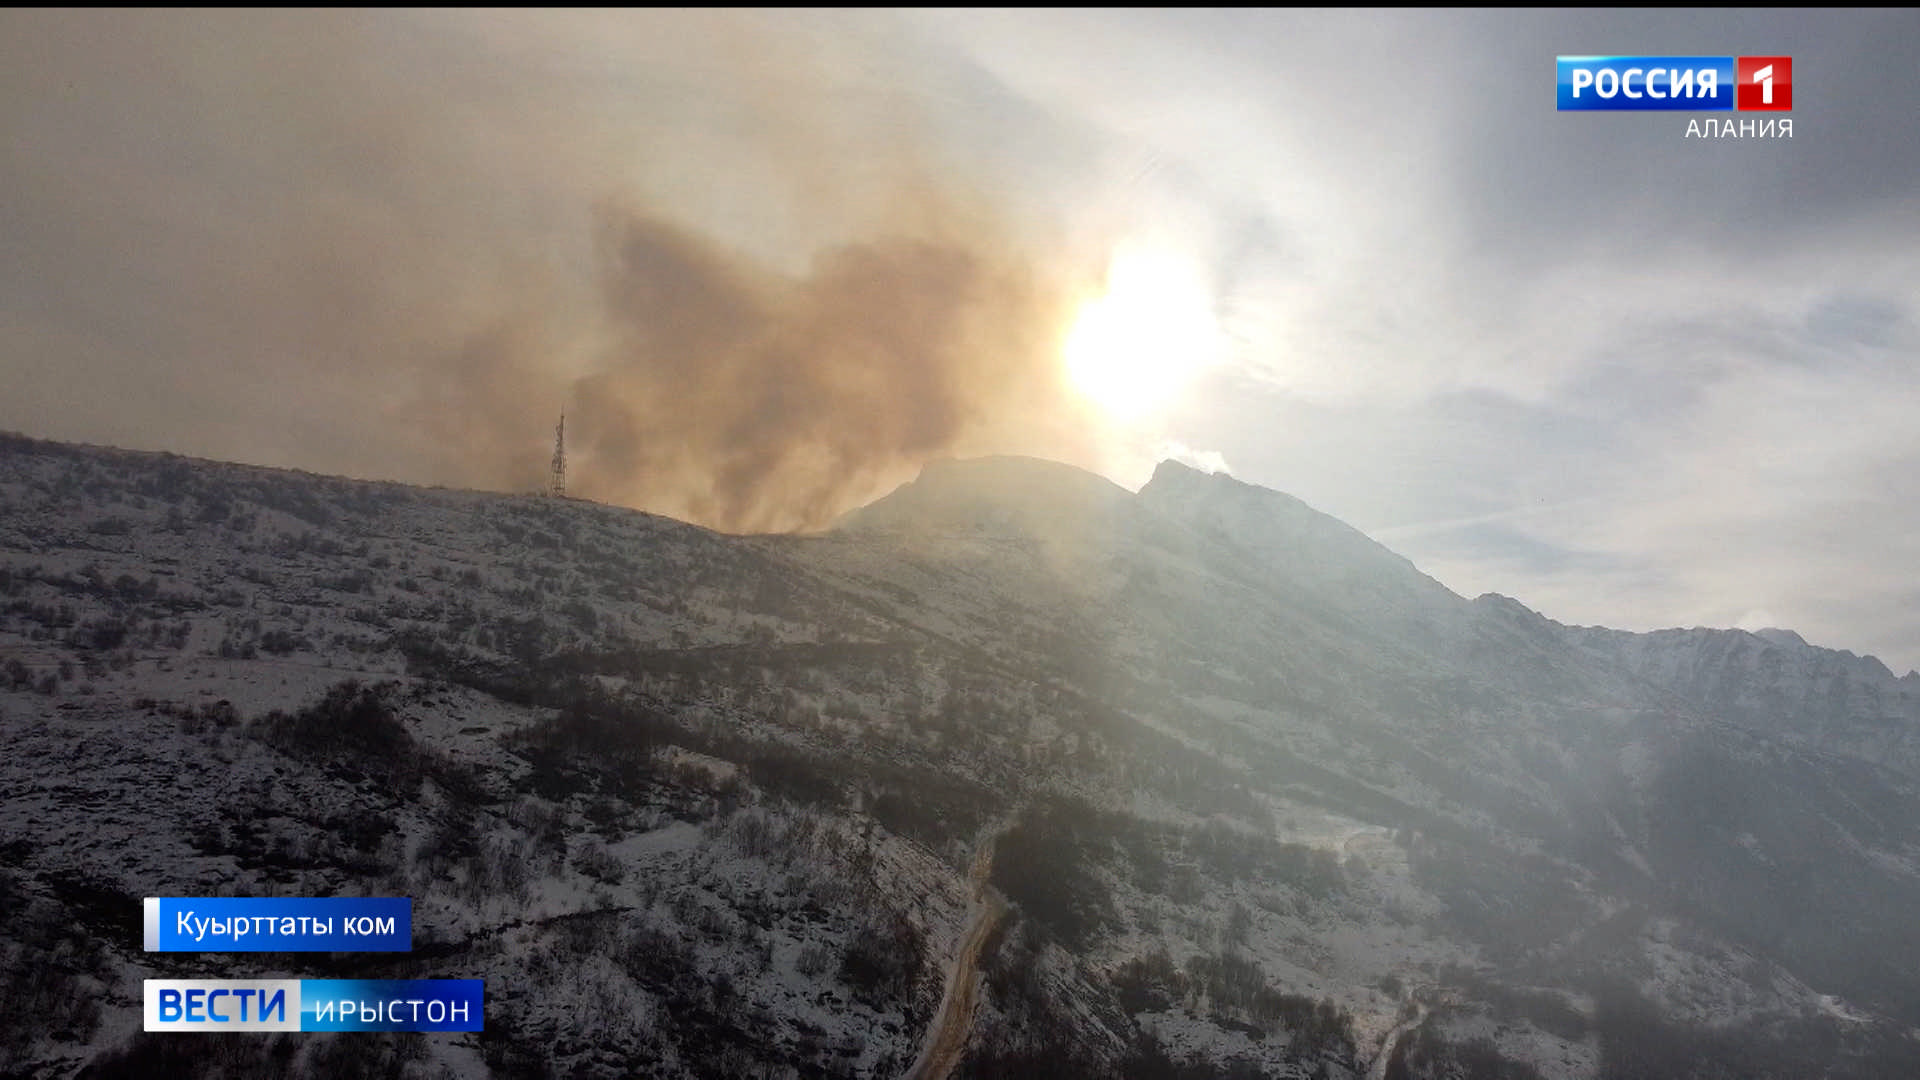 12 возгораний сухой травы зафиксировано в районах Северной Осетии за прошедшие сутки – Минприроды